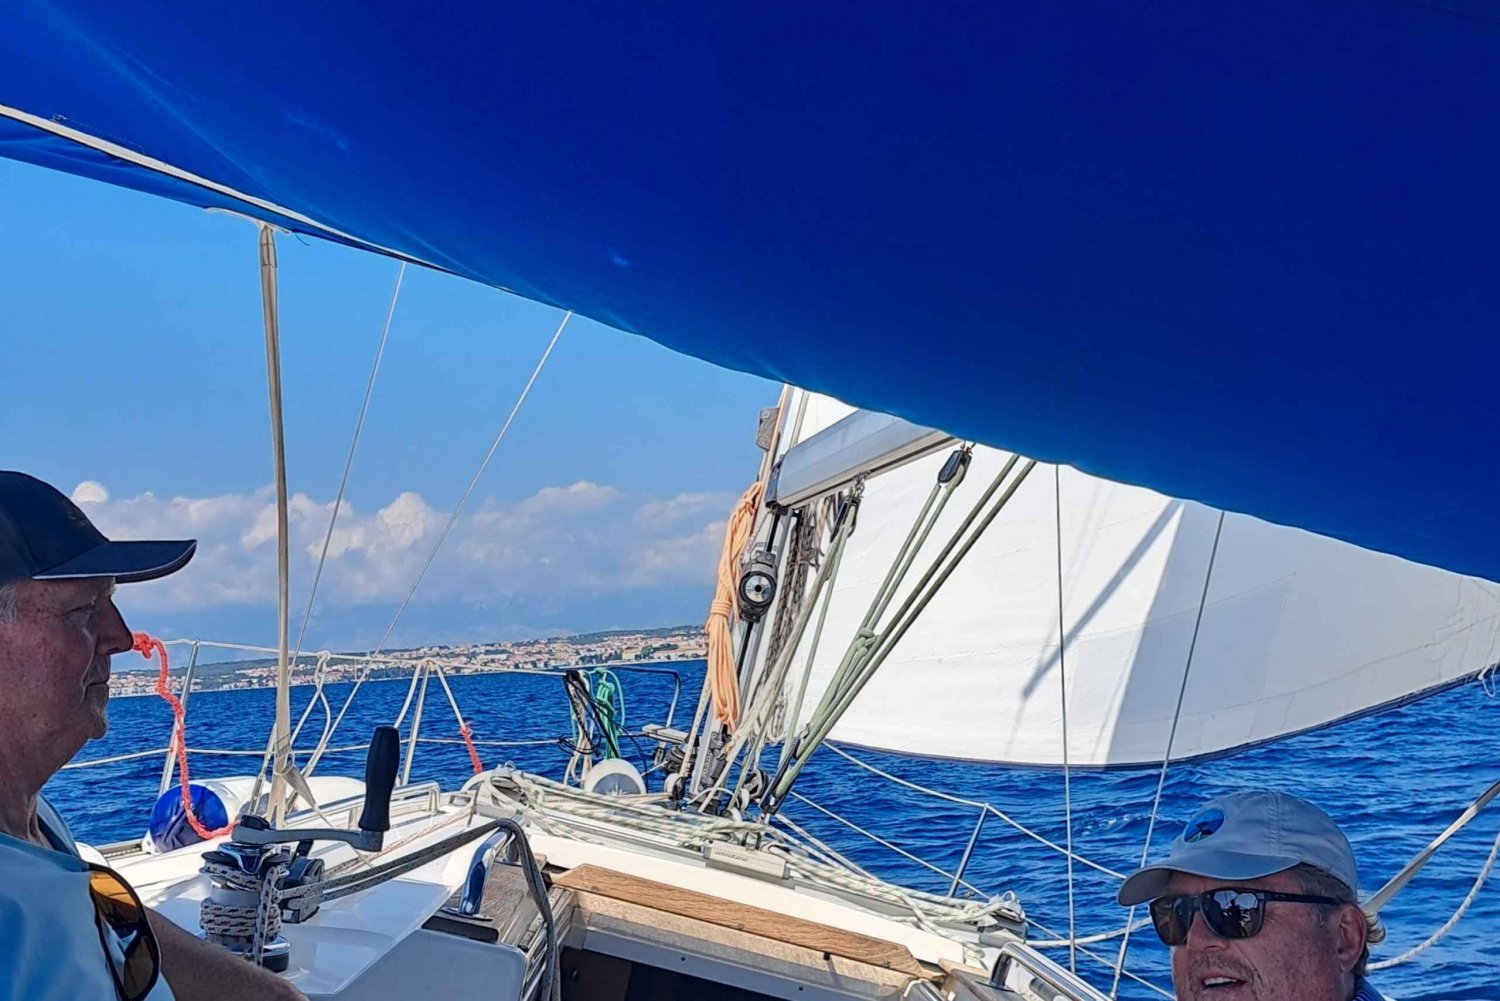 Sea, Sun, and Wind: Half-Day Sailing in Zadar's Aquatorium